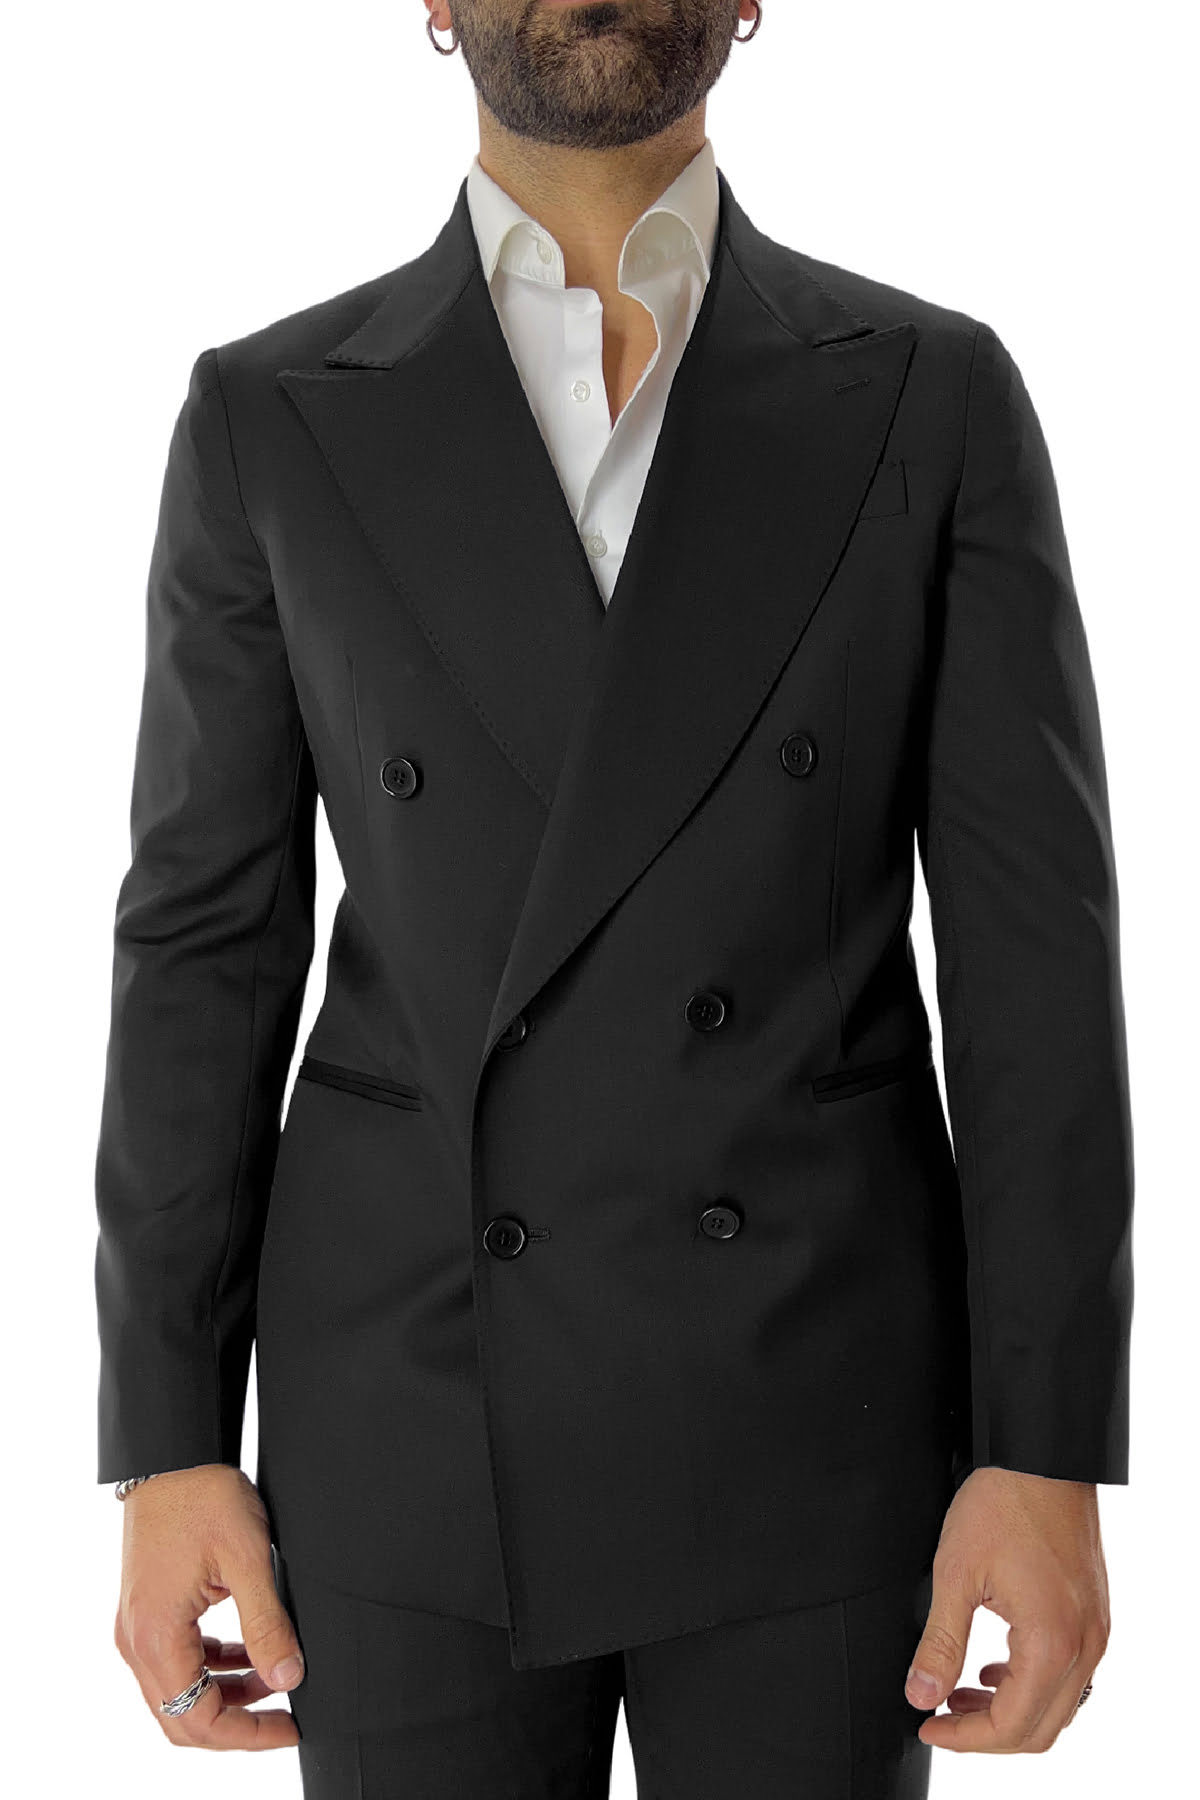 Abito uomo con giacca doppiopetto nera rever a lancia e pantalone tasca america in fresco lana 100% Vitale Barberis Canonico